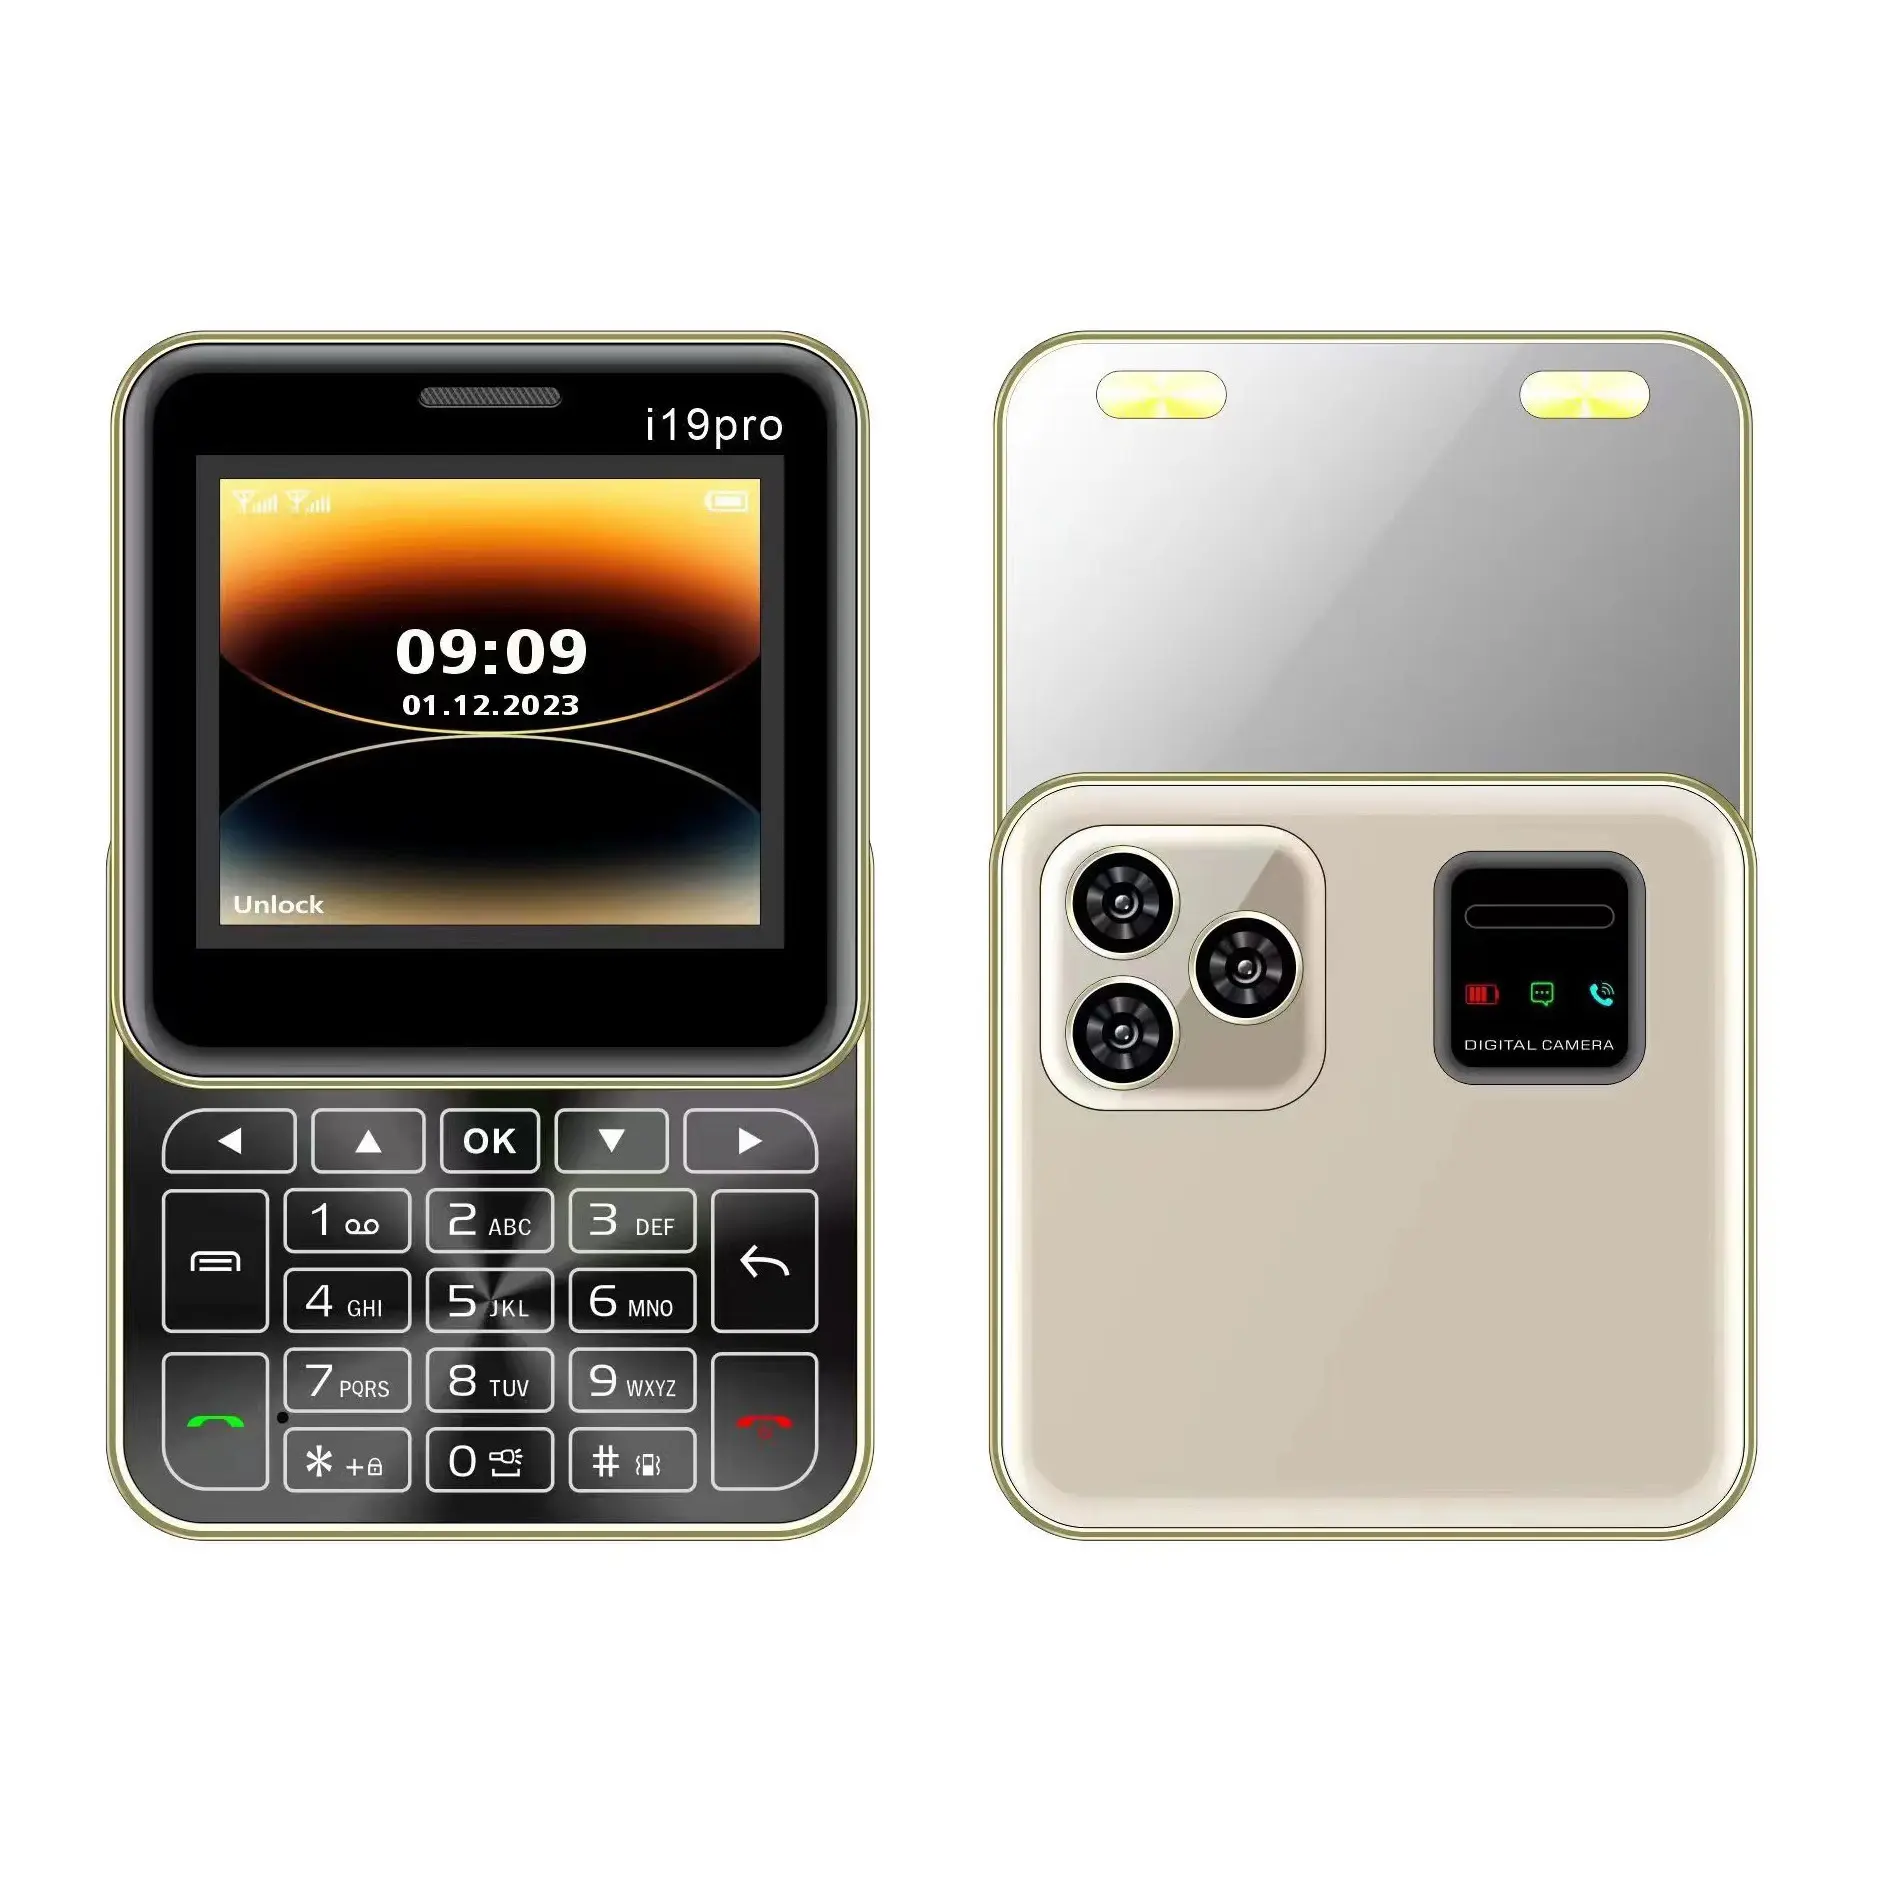 Mini botão deslizante giratório bonito para celular de 2.4 polegadas, botão duplo SIM dois tocha, voz mágica, telefone celular quadrado pequeno para lista negra.